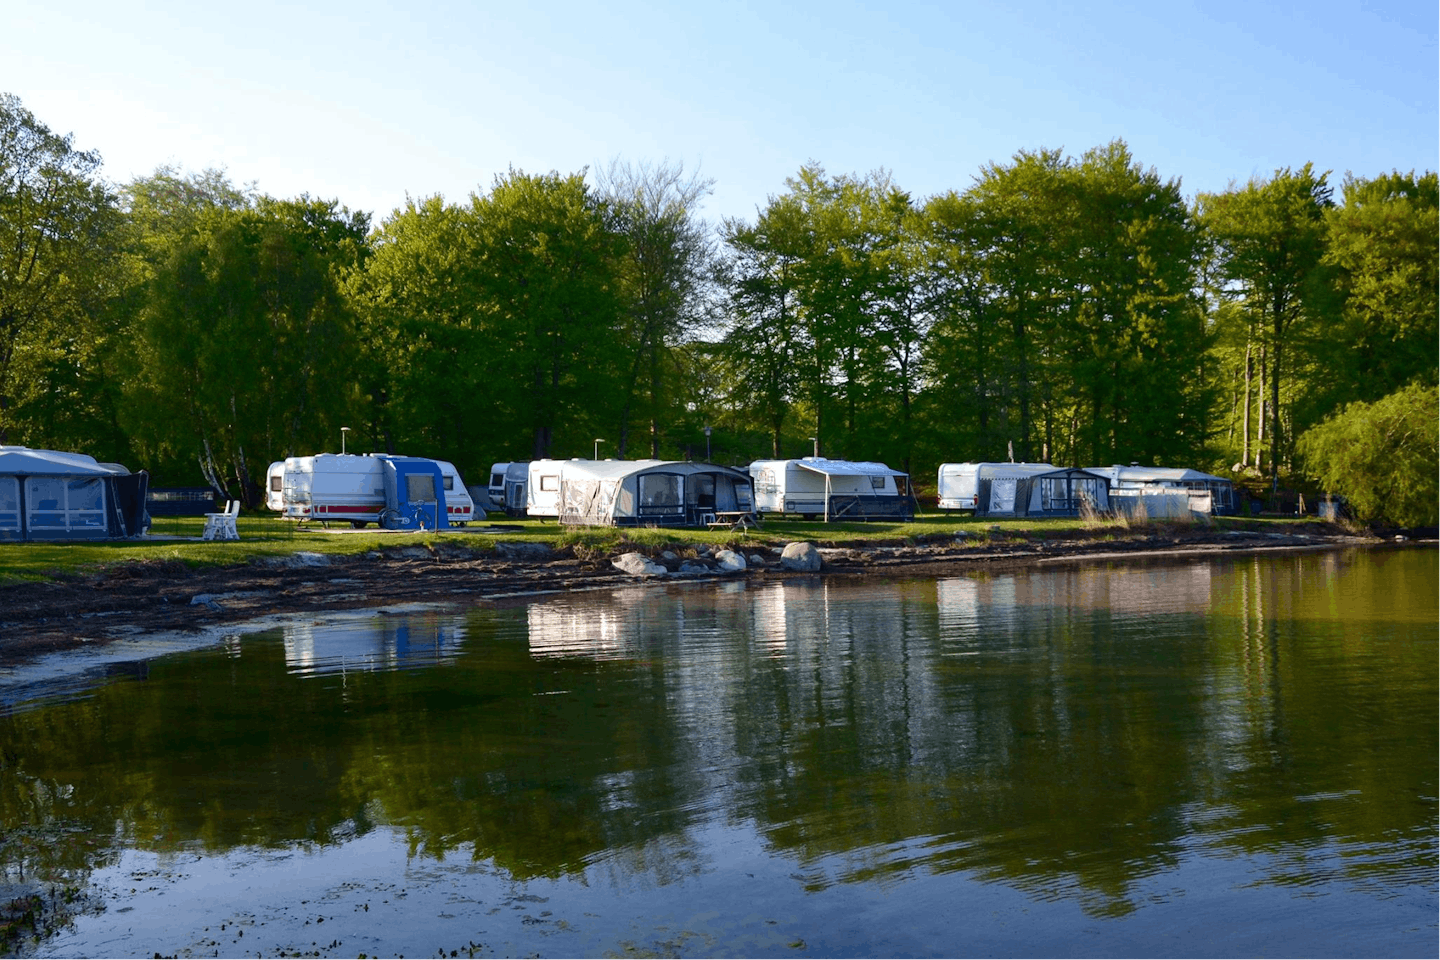 My Camping Tredenborg - Blick auf die Standplätze direkt am Ufer des Sees